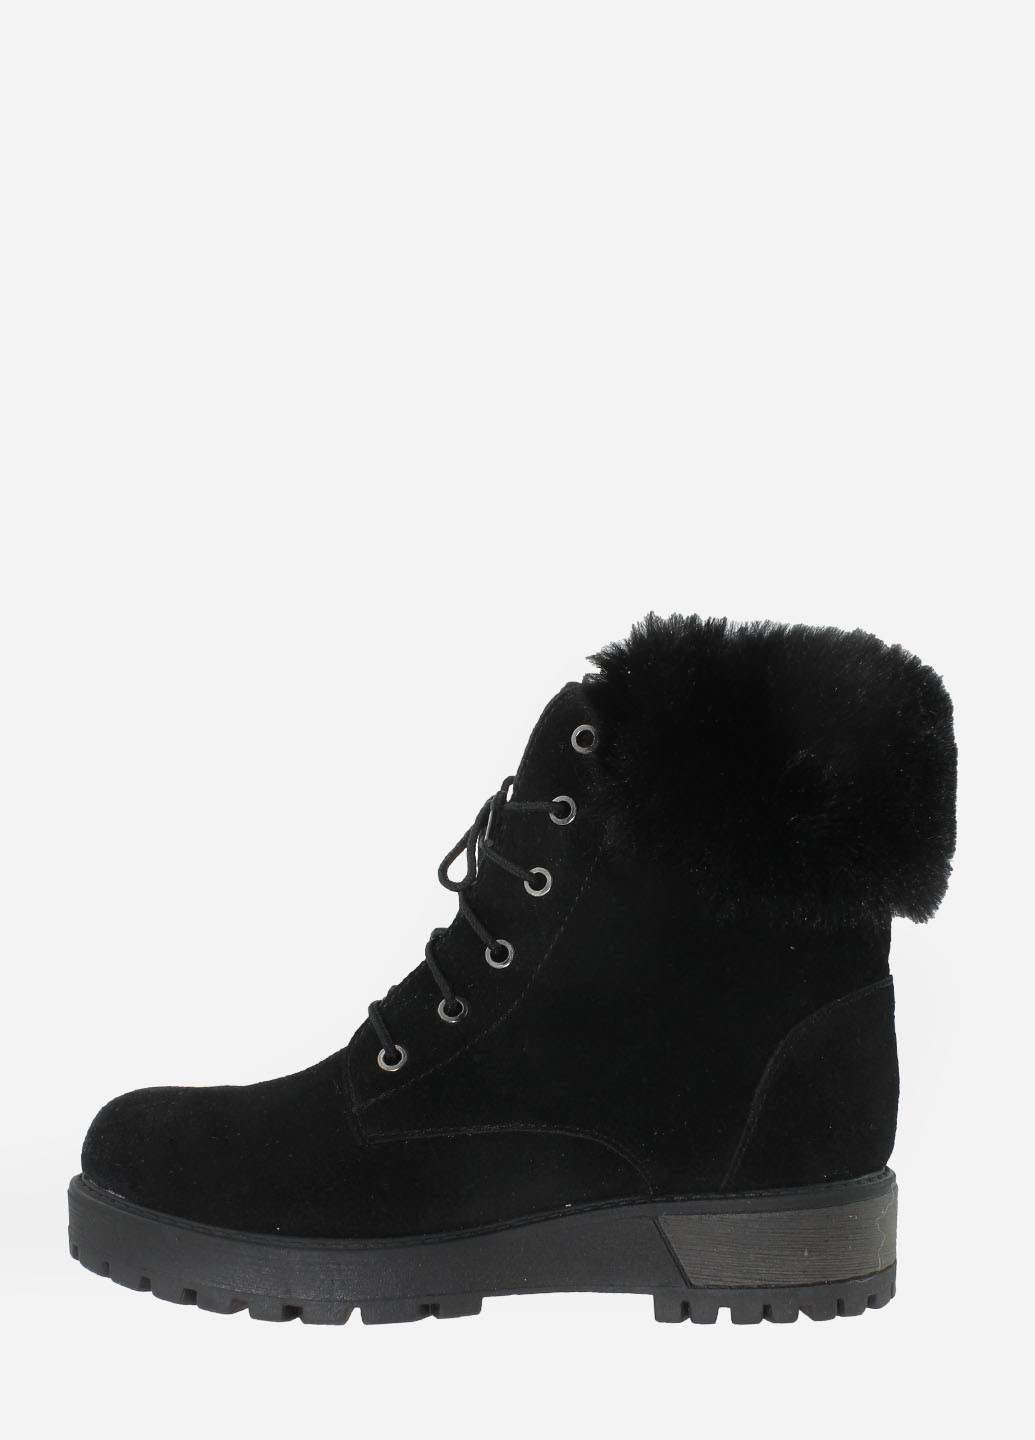 Зимние ботинки rg18-55971-11 черный Gampr из натуральной замши